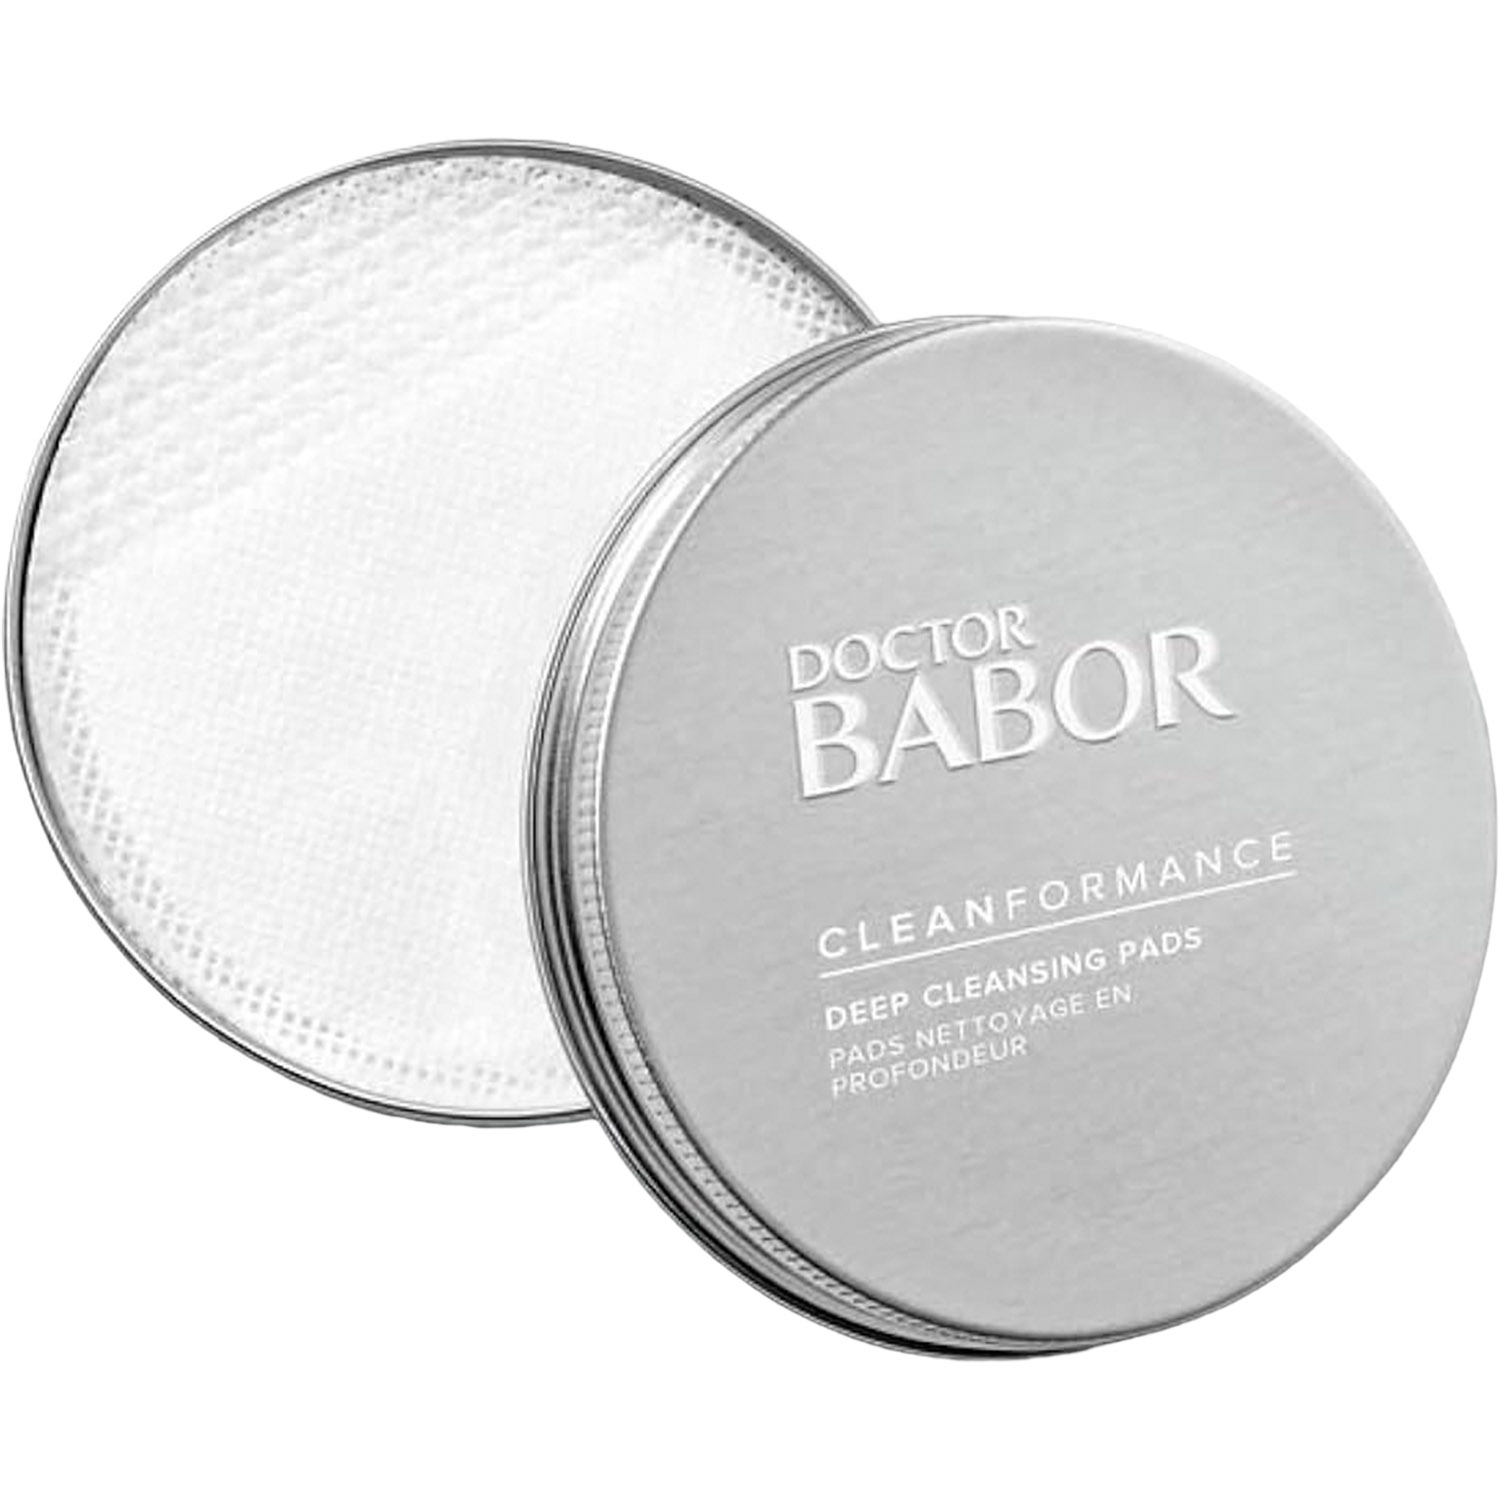 Пады для глубокого очищения кожи Babor Doctor Babor Clean Formance Deep Cleansing Pads, 20 шт. - фото 1